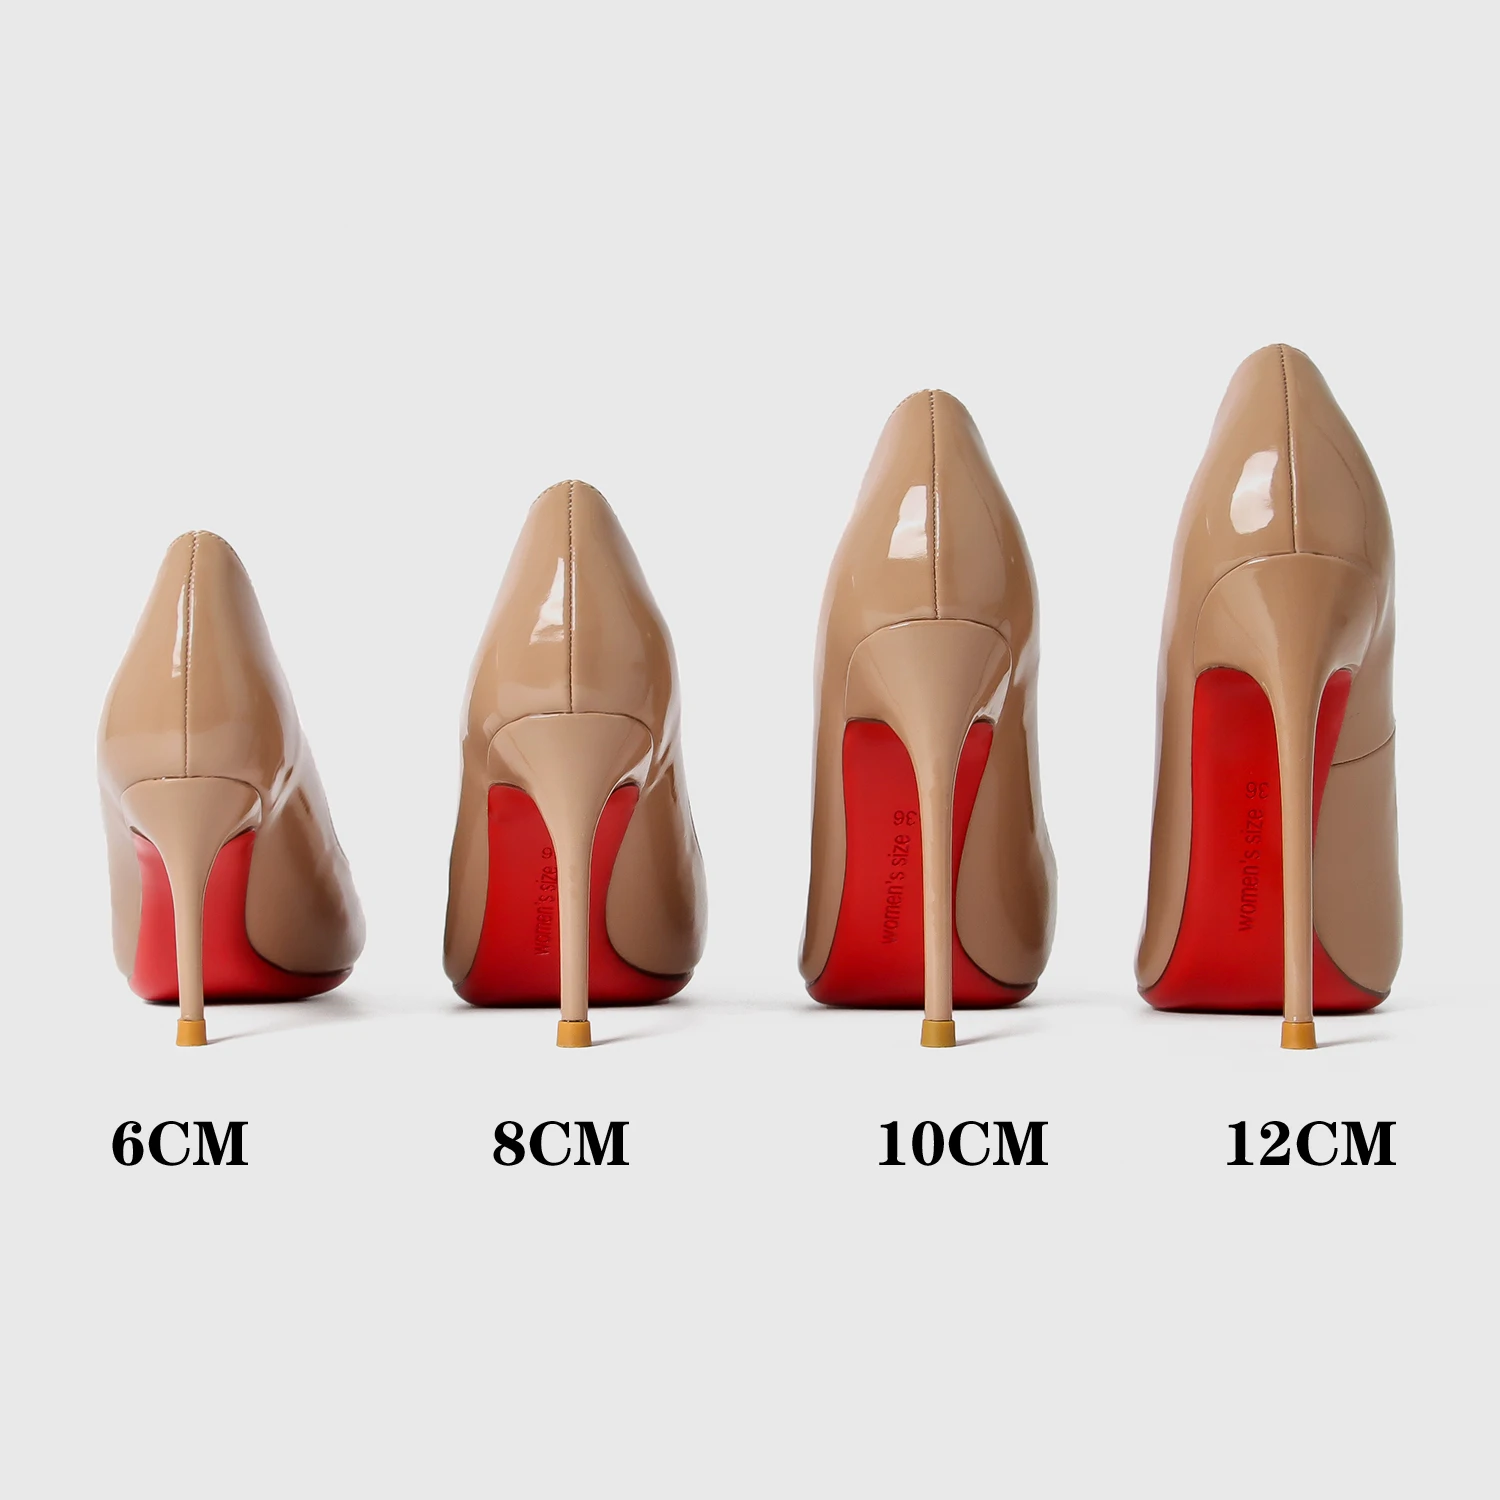 INDYA HEELS In Red Patent | Buy Women's HEELS Online | Novo Shoes